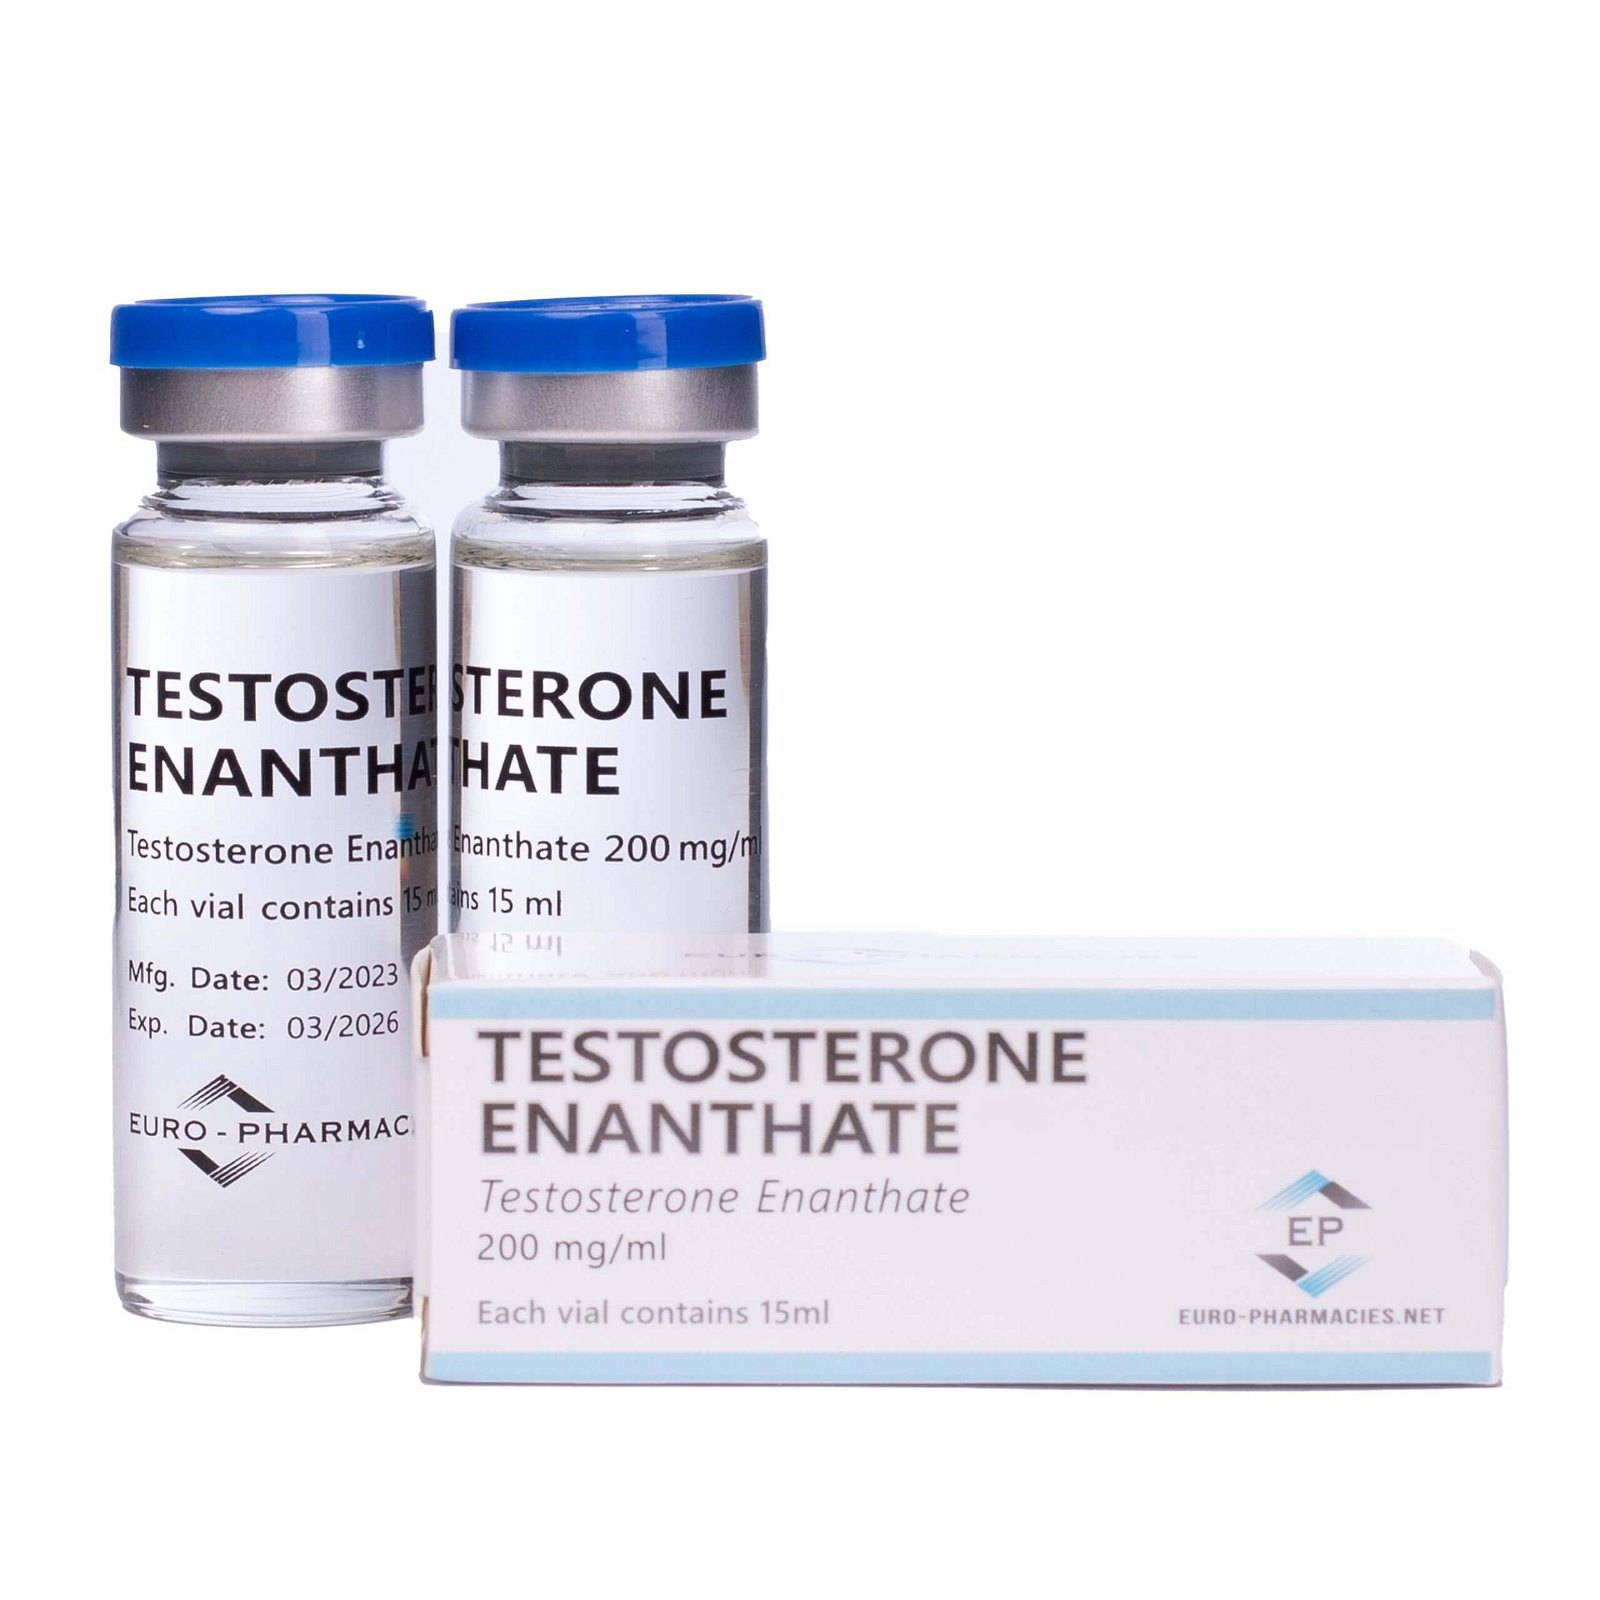 EuroPharma 15ml Testosteron Enanthate 200